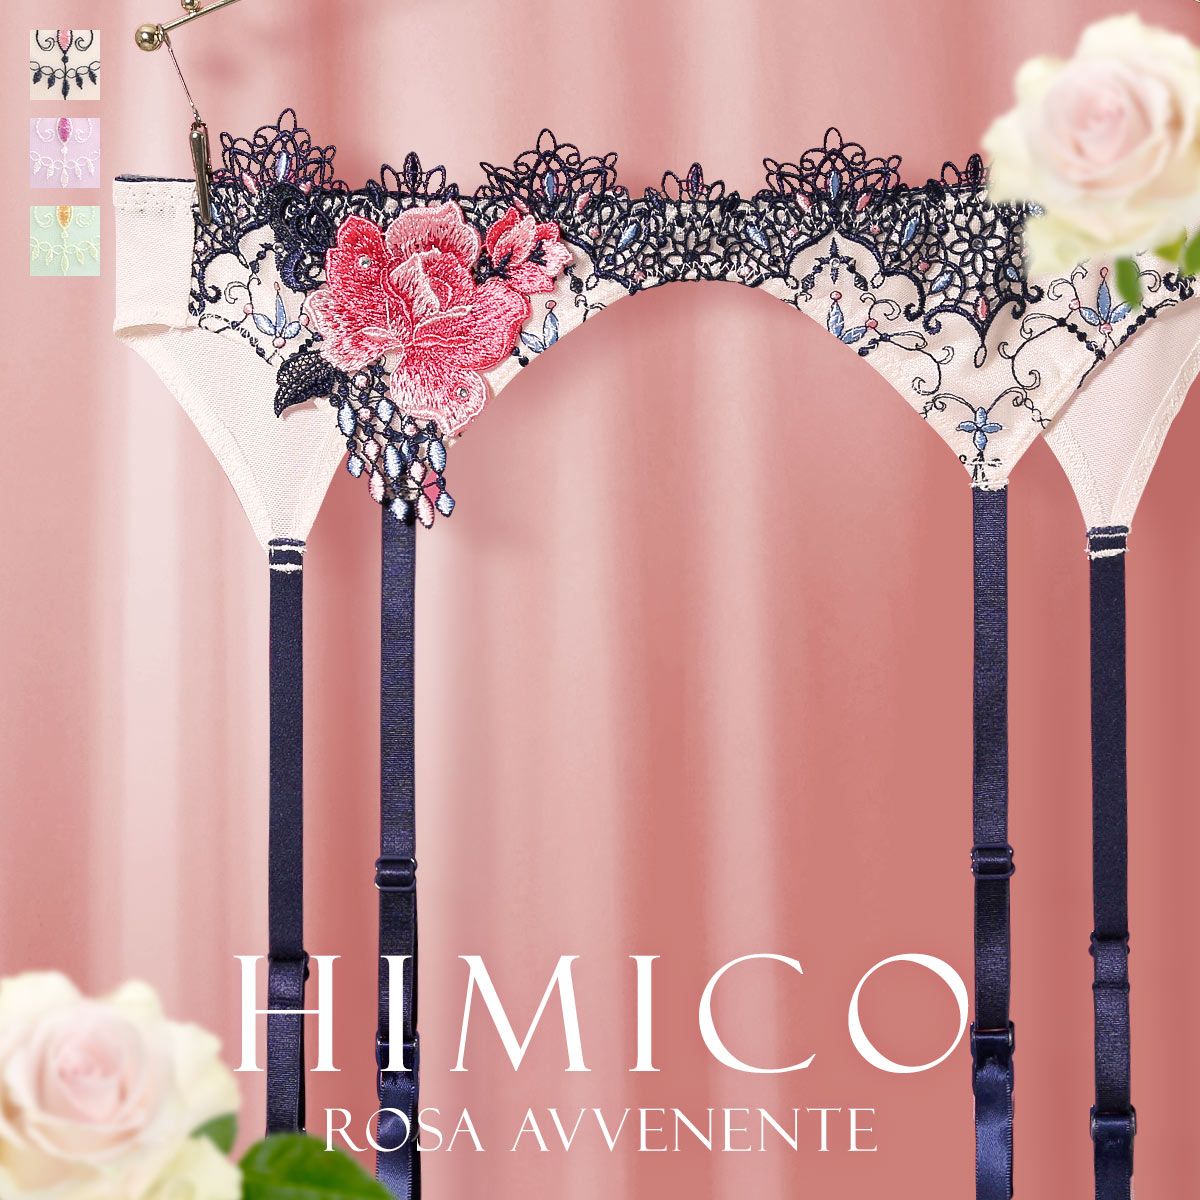 【メール便(7)】【送料無料】 HIMICO 美しい薔薇の魅力漂う Rosa Avvenente ガーターベルト ML 021series ランジェリー